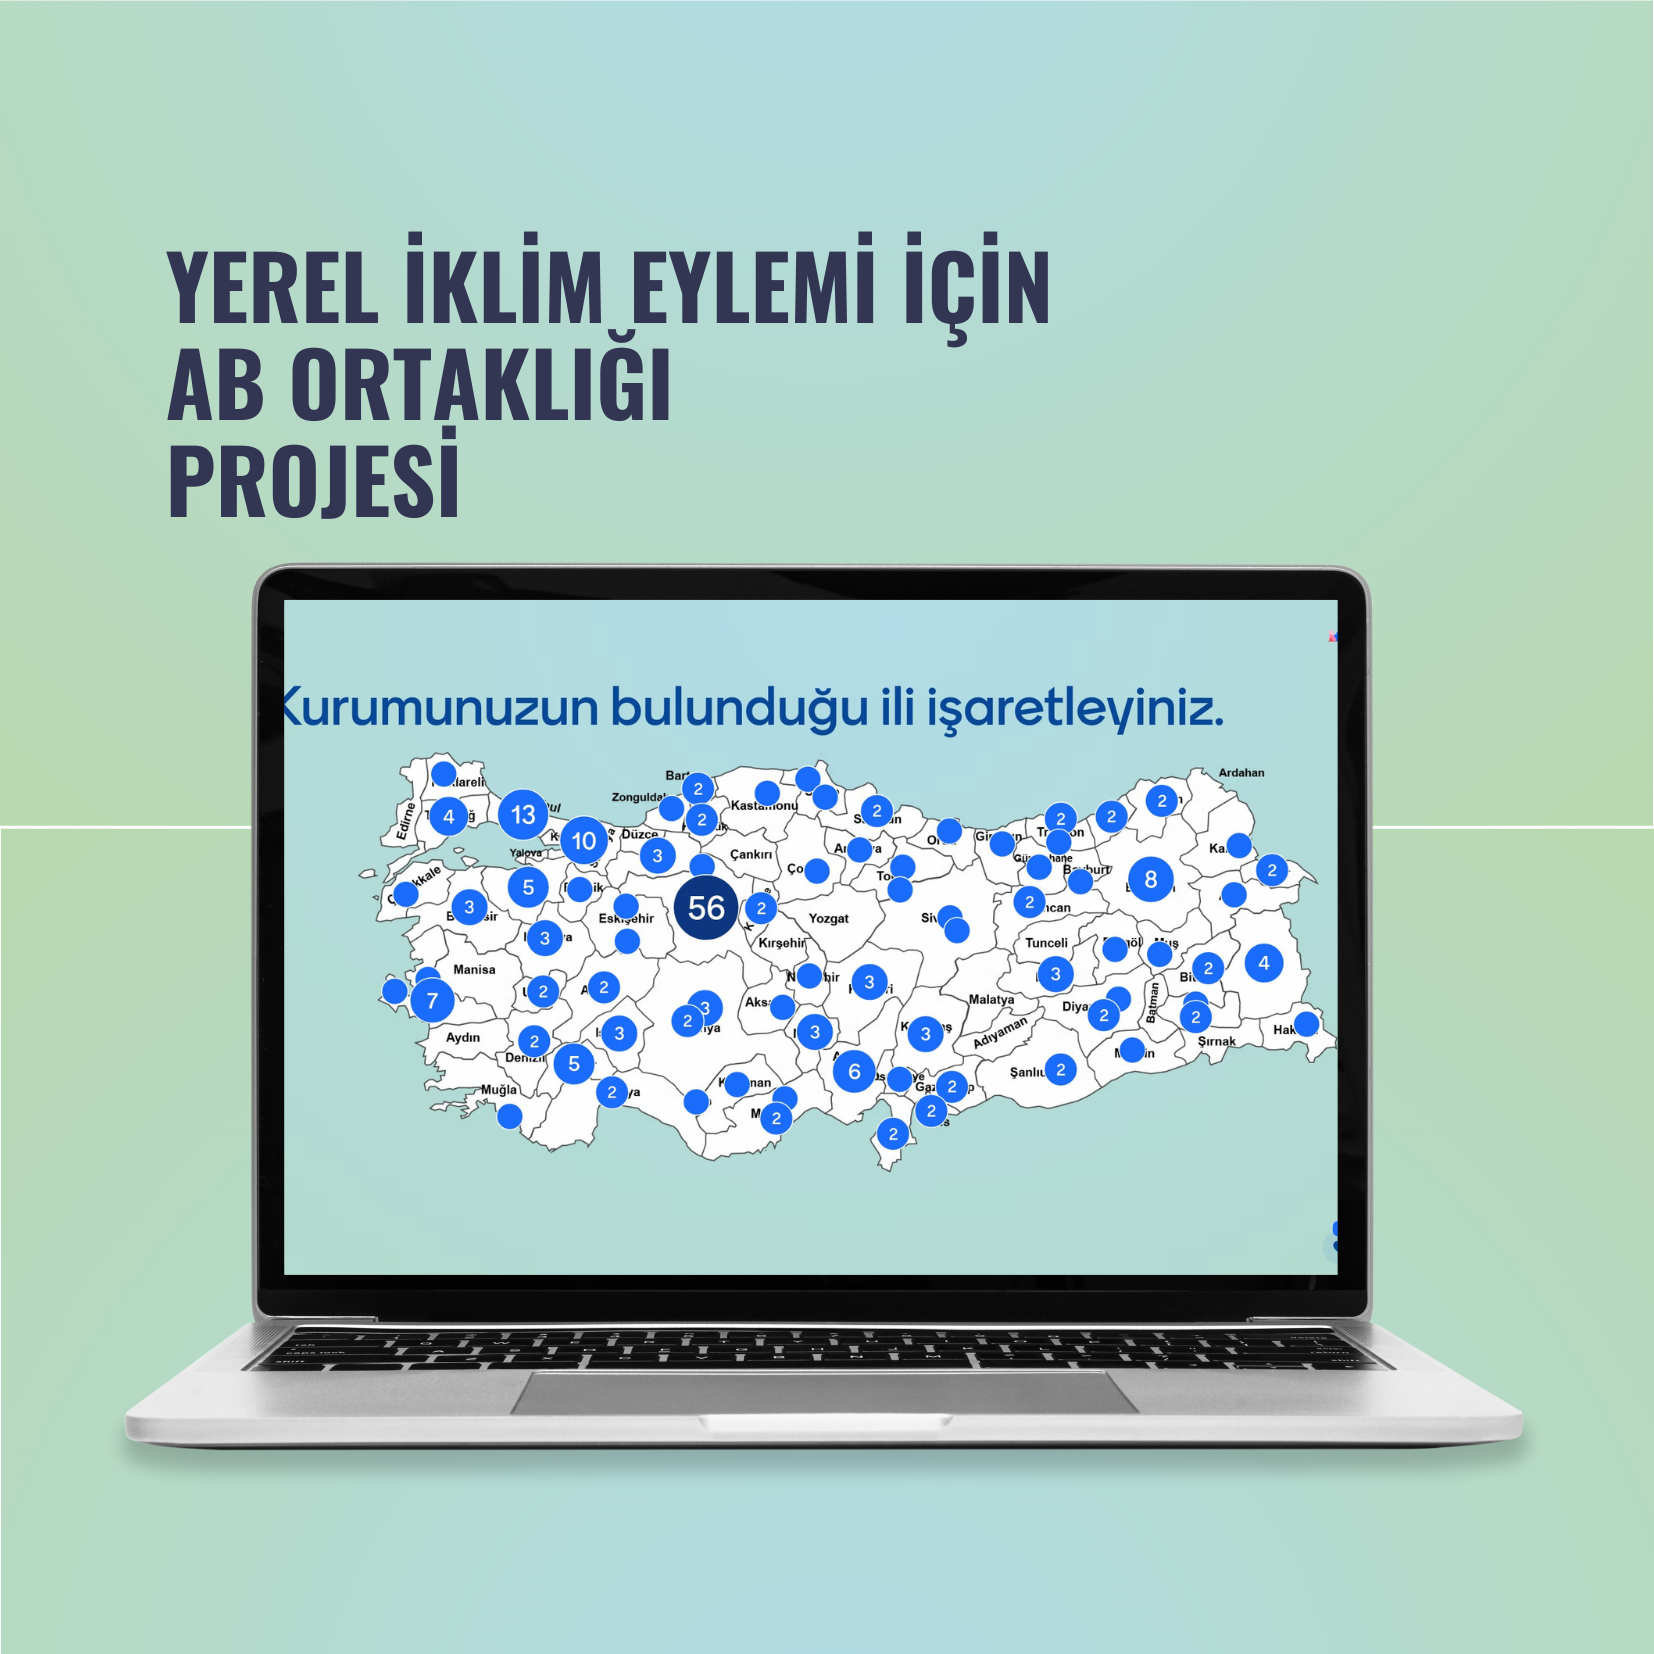 Türkiye’de Yerel İklim Eylemi için AB Ortaklığı Projesi Ön Başlangıç Çalıştayı gerçekleştirildi